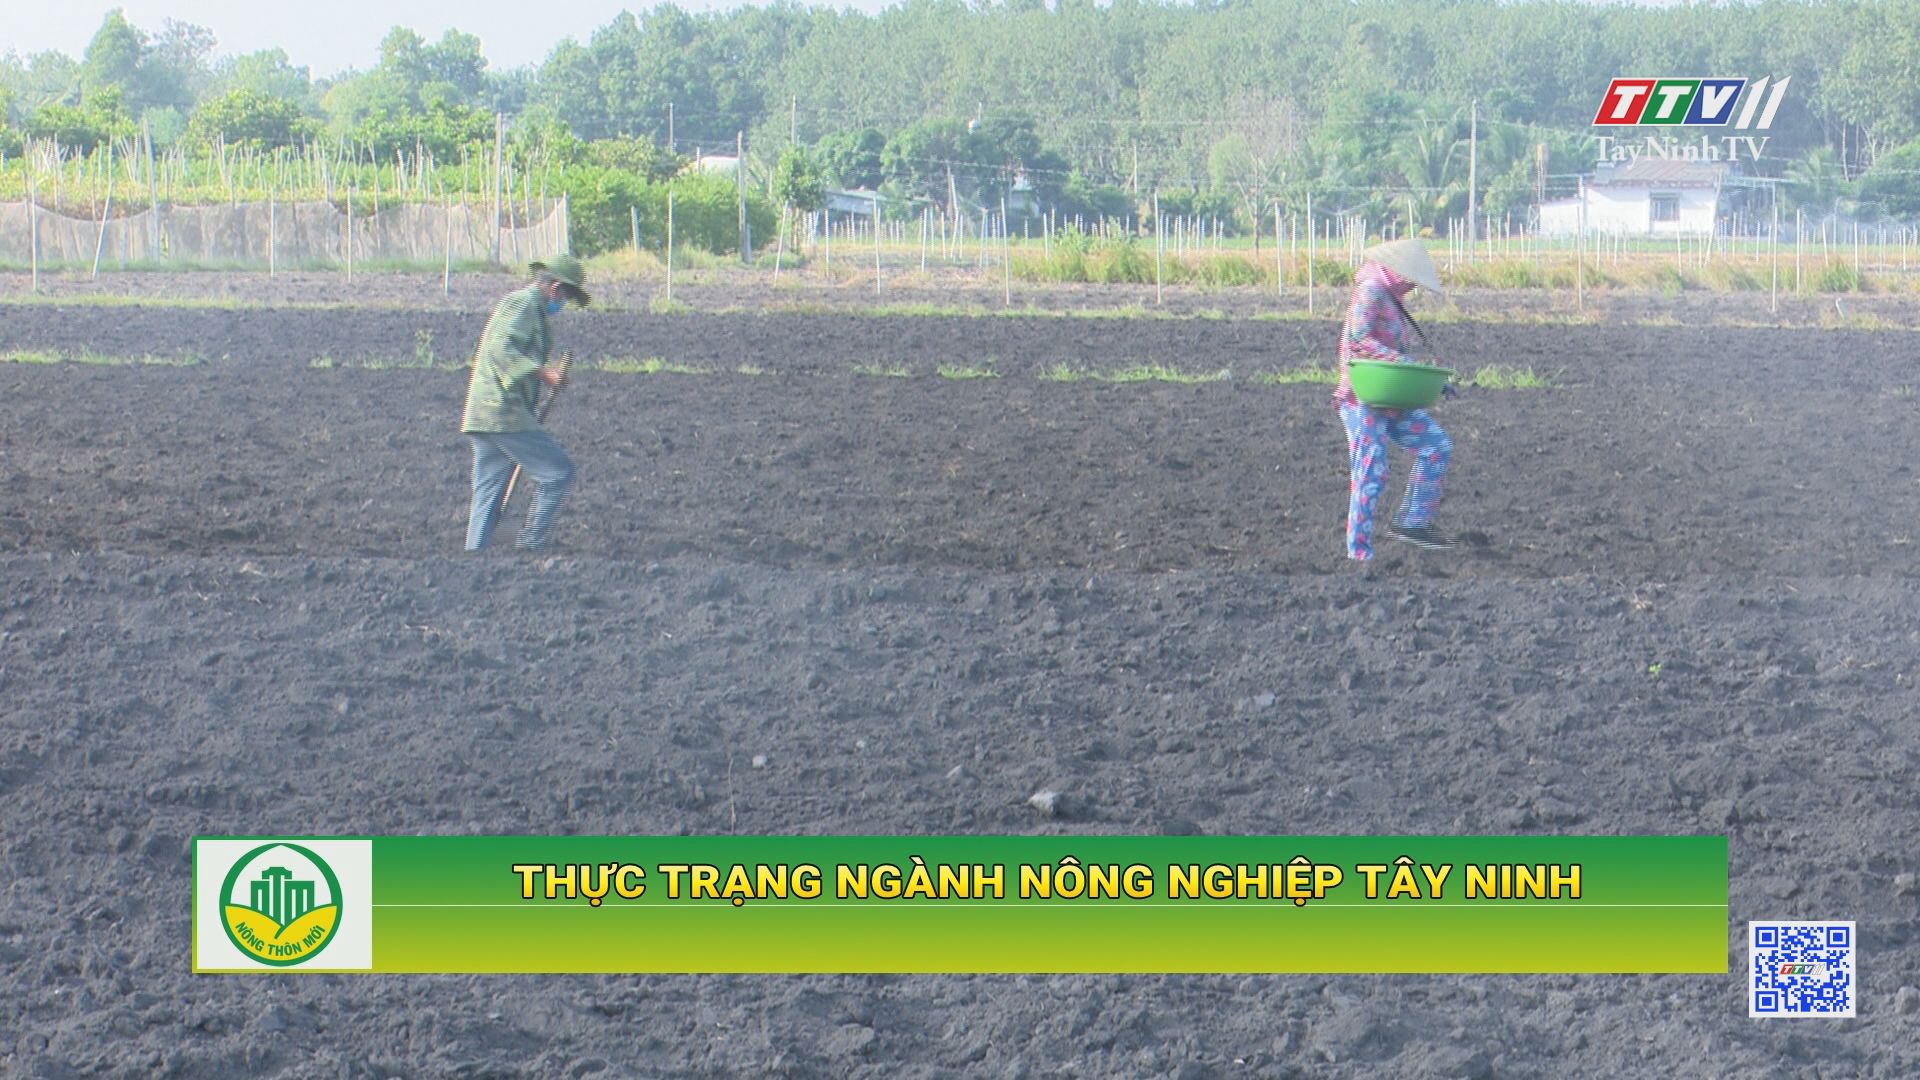 Thực trạng ngành nông nghiệp Tây Ninh | TÂY NINH XÂY DỰNG NÔNG THÔN MỚI | TayNinhTV